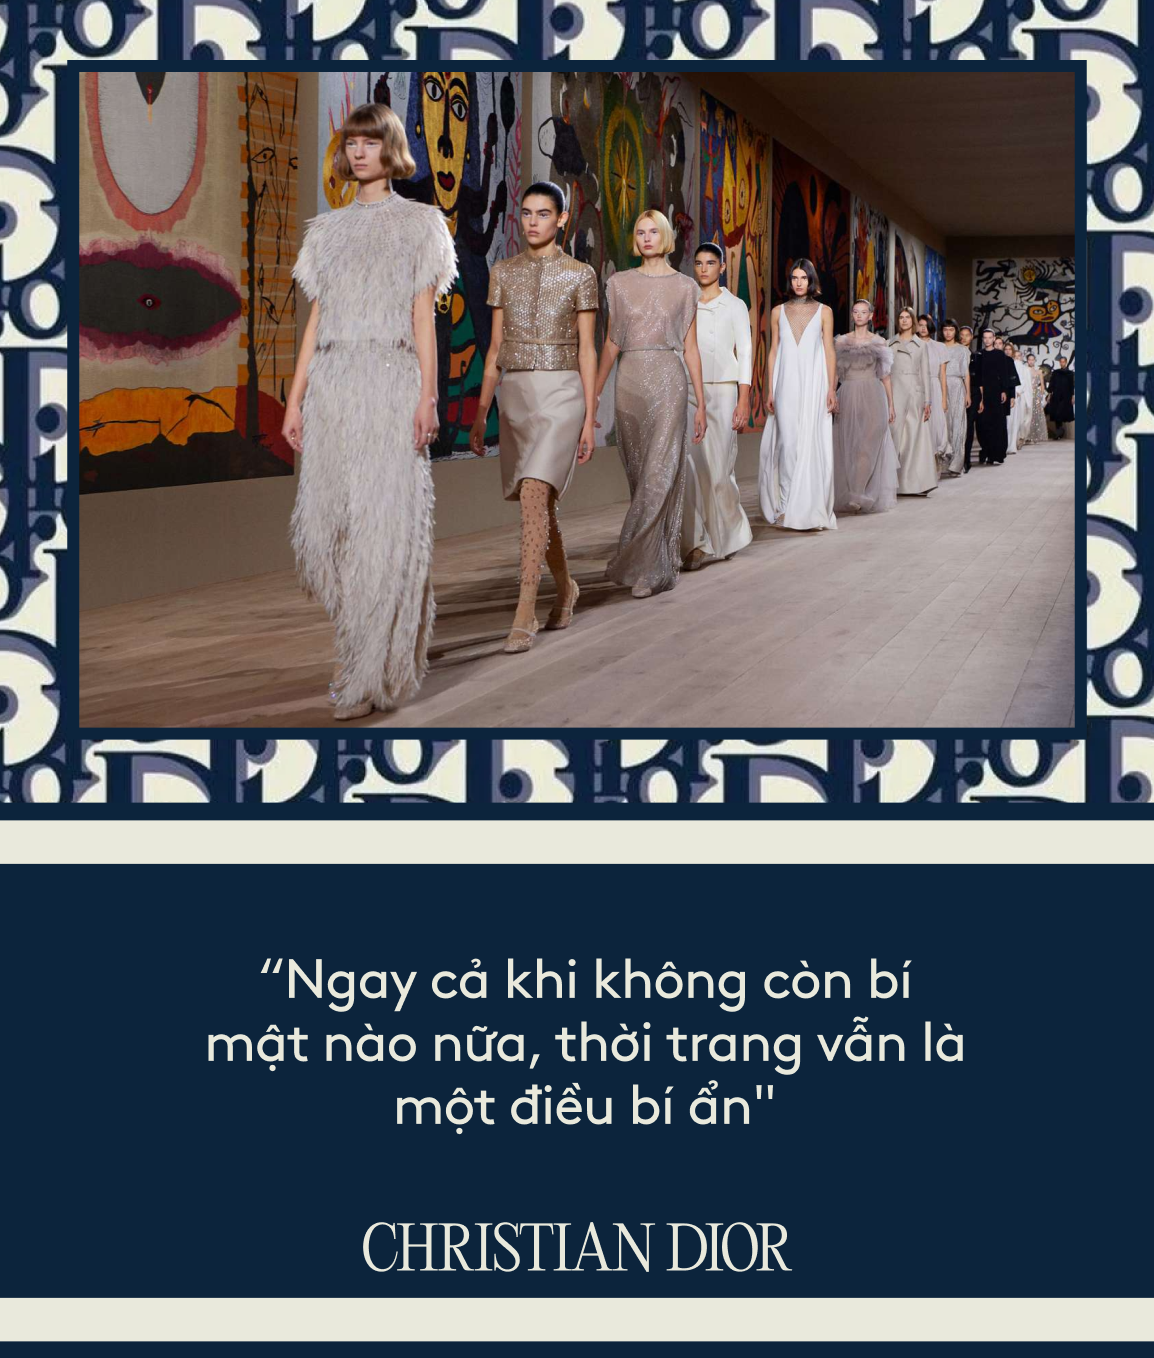 "Ông trùm thời trang" Christian Dior: nhà mốt làm thay đổi thời trang thế giới, đưa biểu tượng thời trang Pháp trở thành thương hiệu toàn cầu - Ảnh 5.